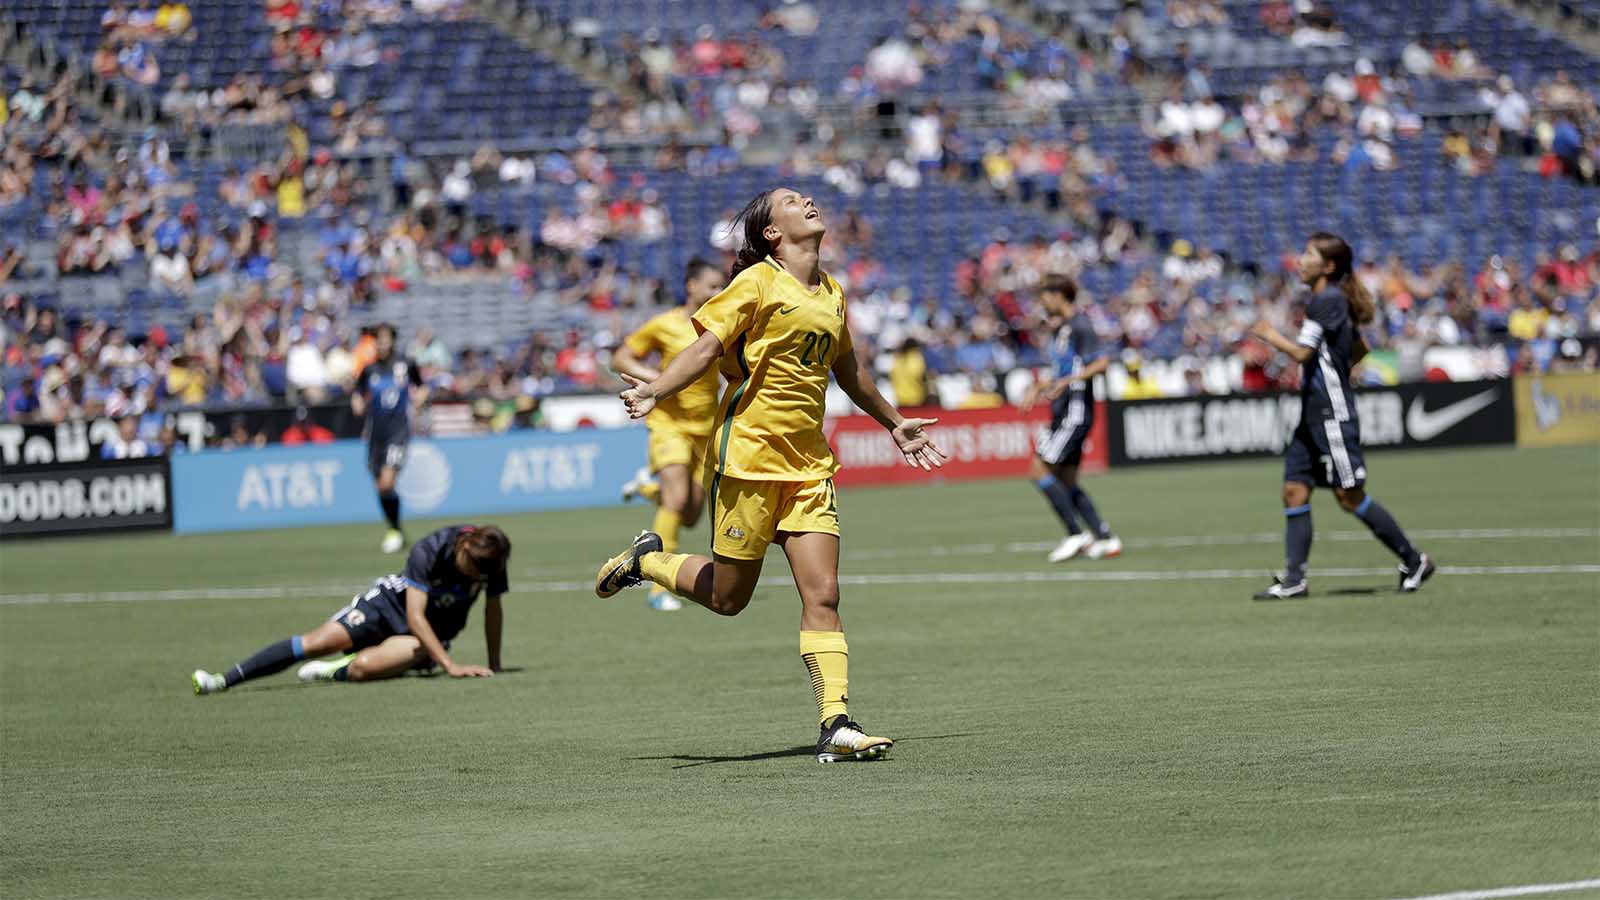 סמנתה מאי קר חוגגת לאחר גול במדי נבחרת אוסטרליה מול יפן יולי 2017 (צילום: AP Photo/Gregory Bull)